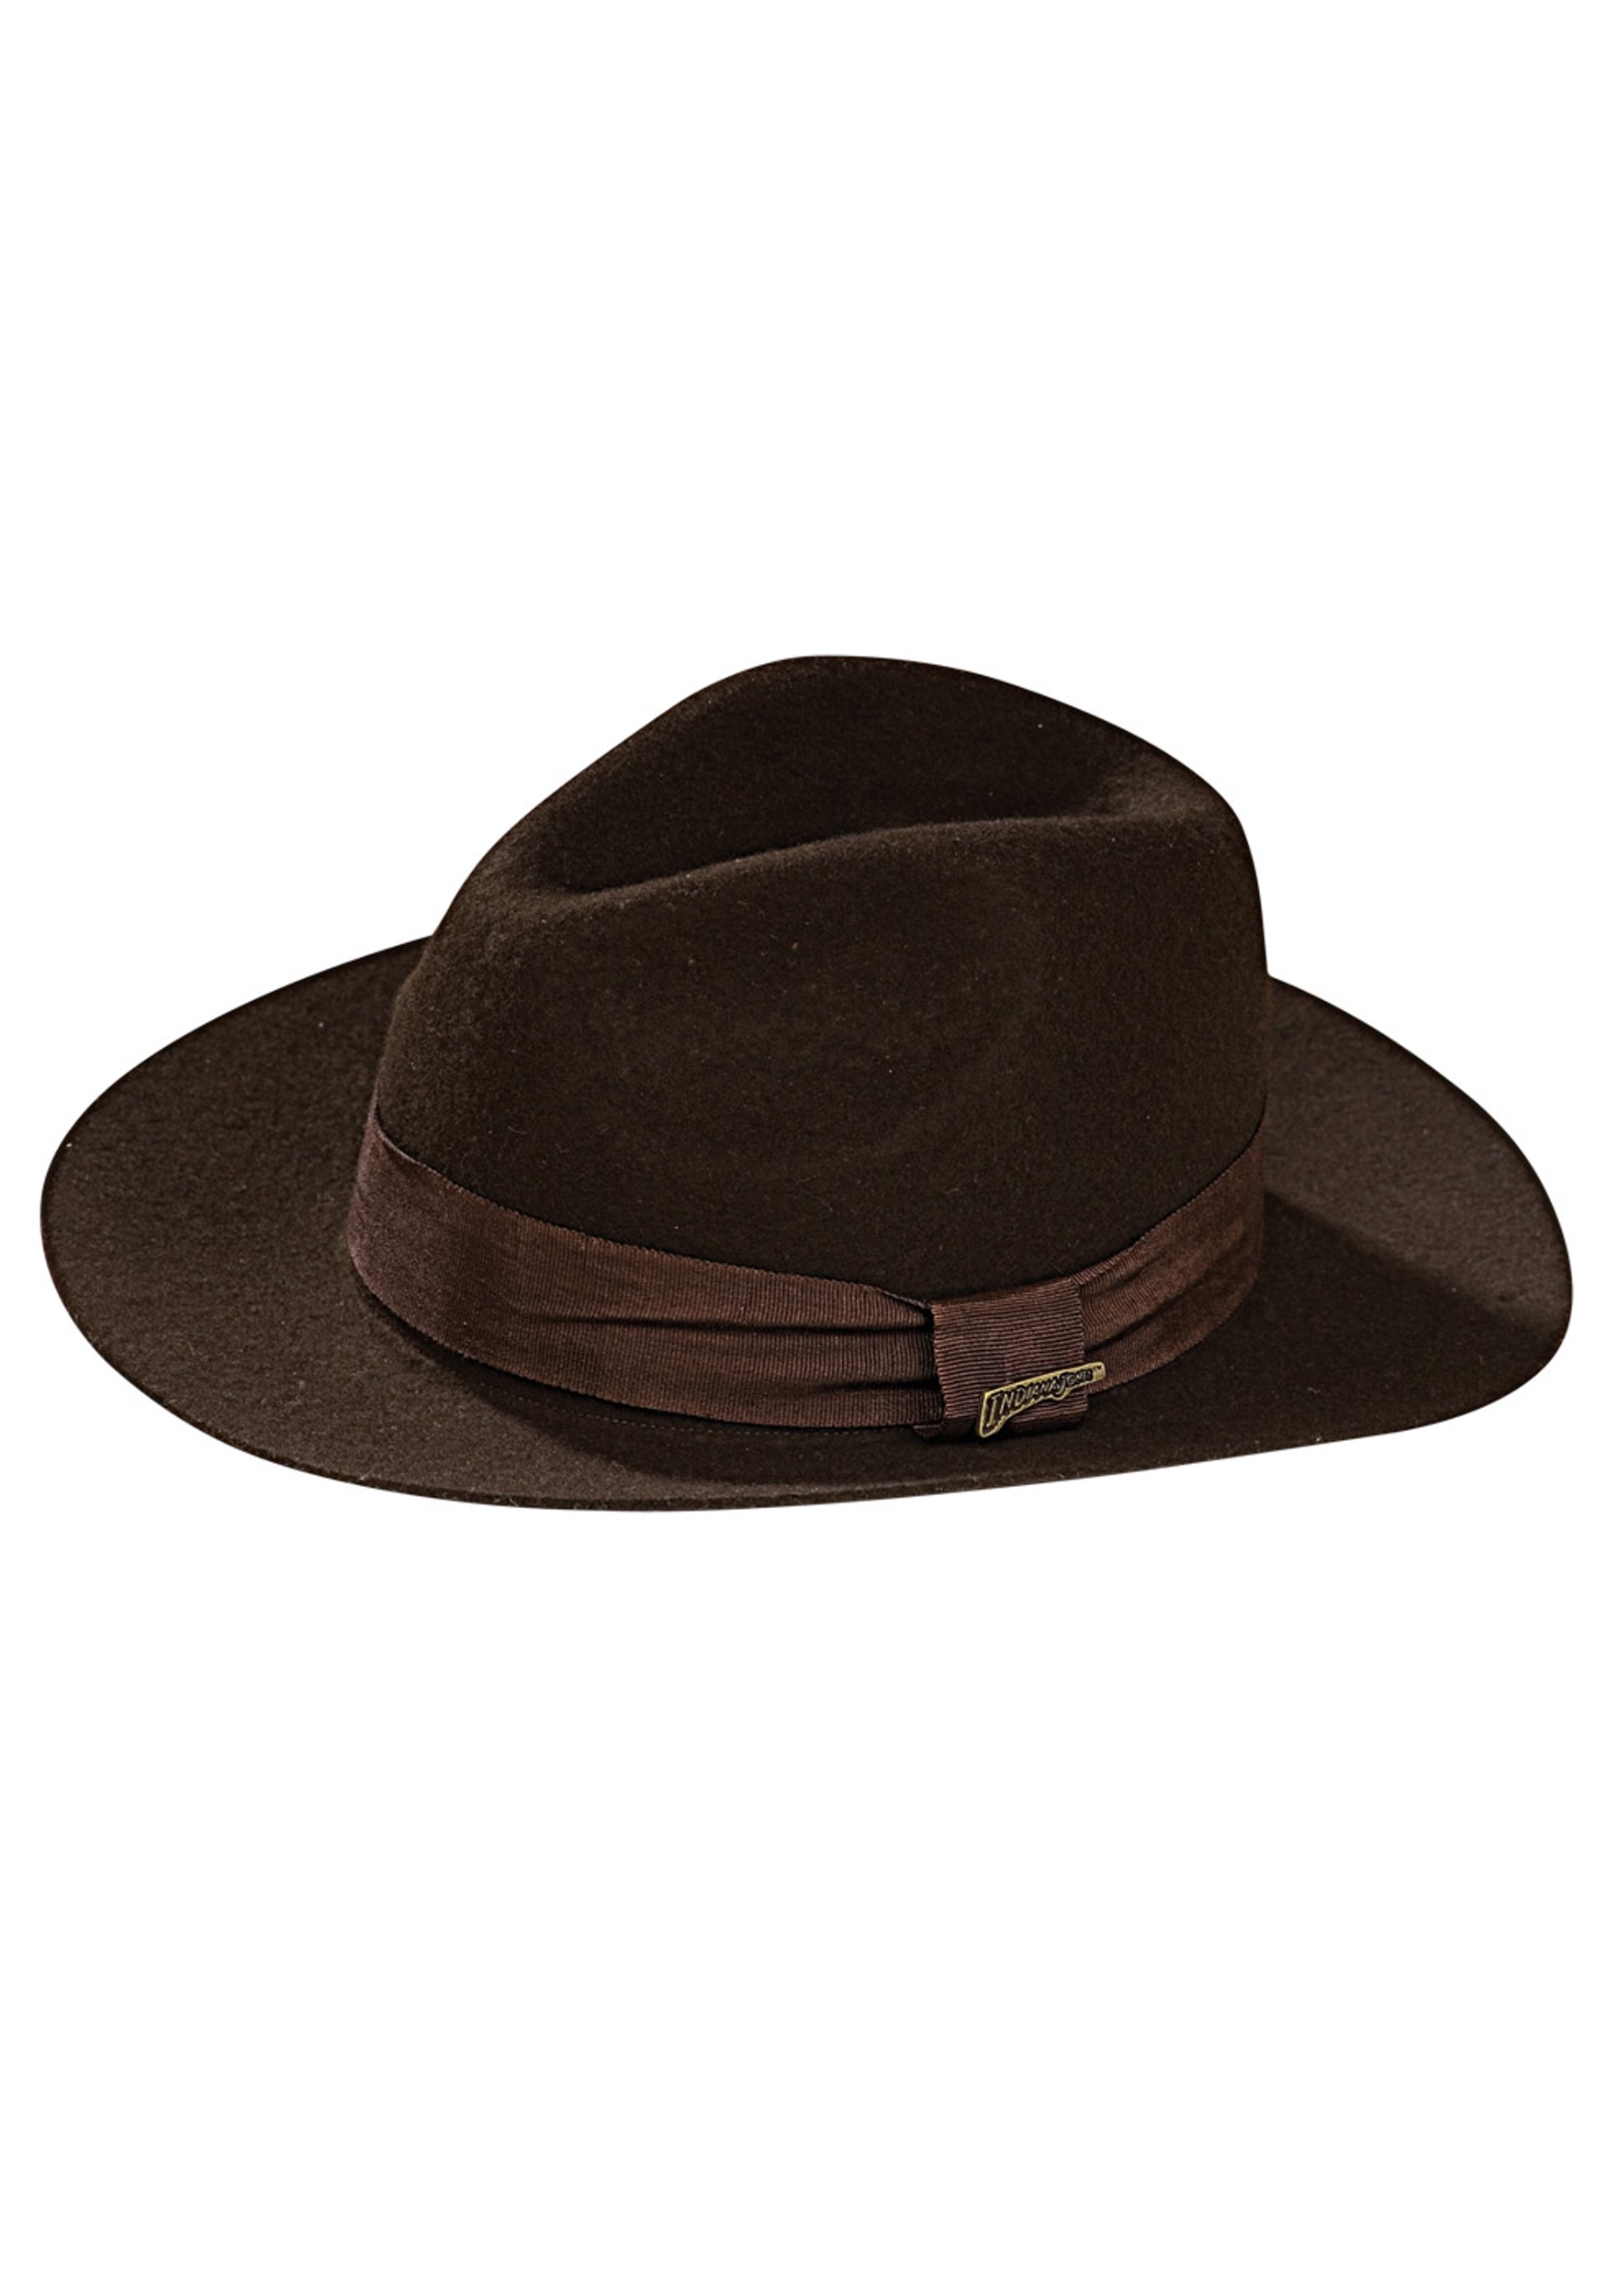 maximizar Oculto Enriquecimiento Sombrero de Indiana Jones deluxe para adulto